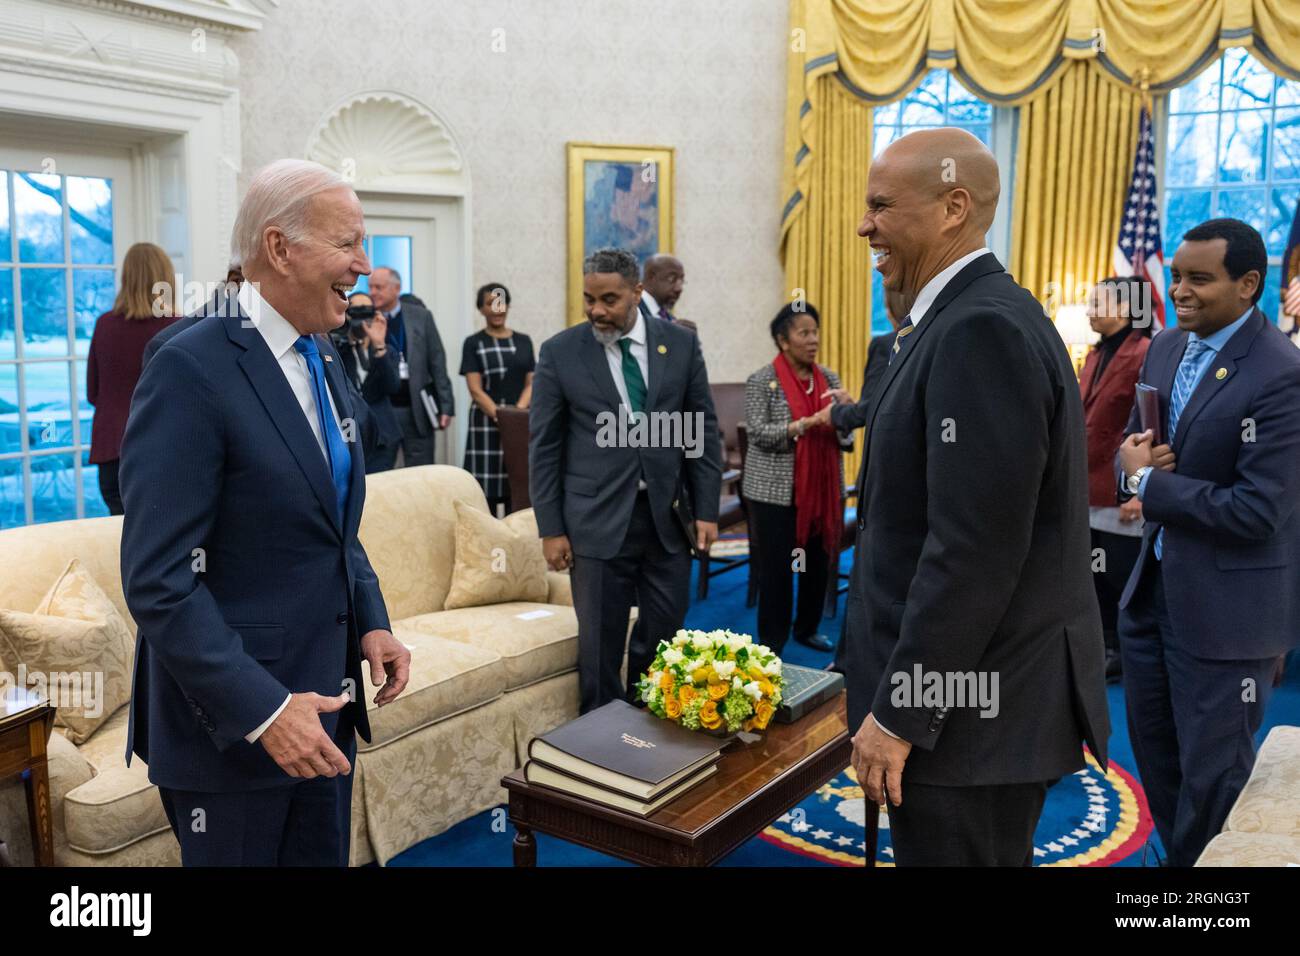 Reportage: Il presidente Joe Biden e il vicepresidente Kamala Harris incontrano i membri del Congresso Black Caucus, giovedì 2 febbraio 2023, nell'Ufficio ovale. Qui, Joe Biden parla con Hakeem Jeffries. Foto Stock